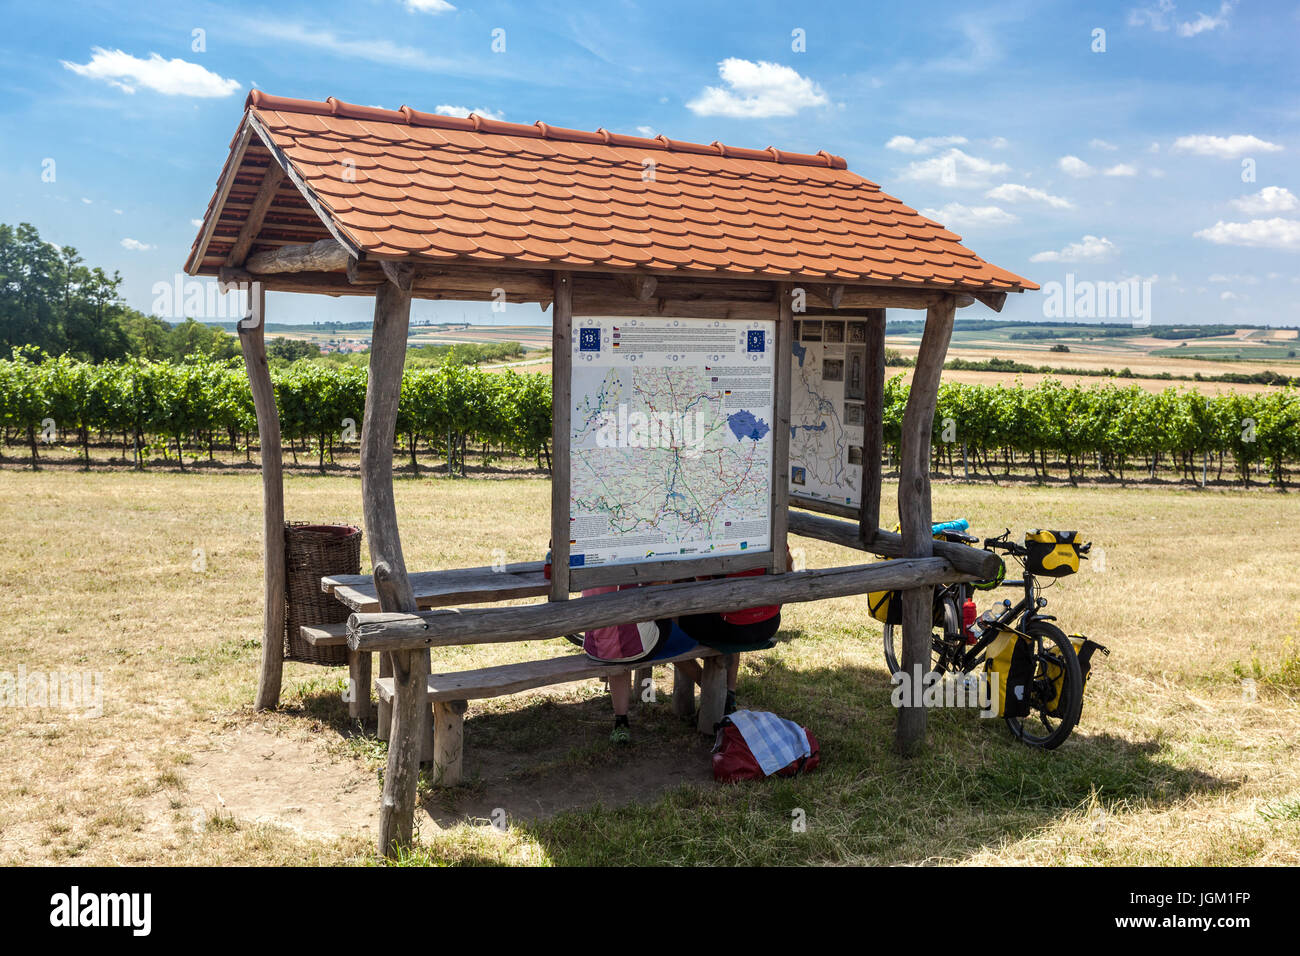 Fahrrad-Routen in der Region Südmähren, Ruhe in den Weinbergen. Valtice Wein Region Südmähren, Tschechische Republik, Europa Stockfoto